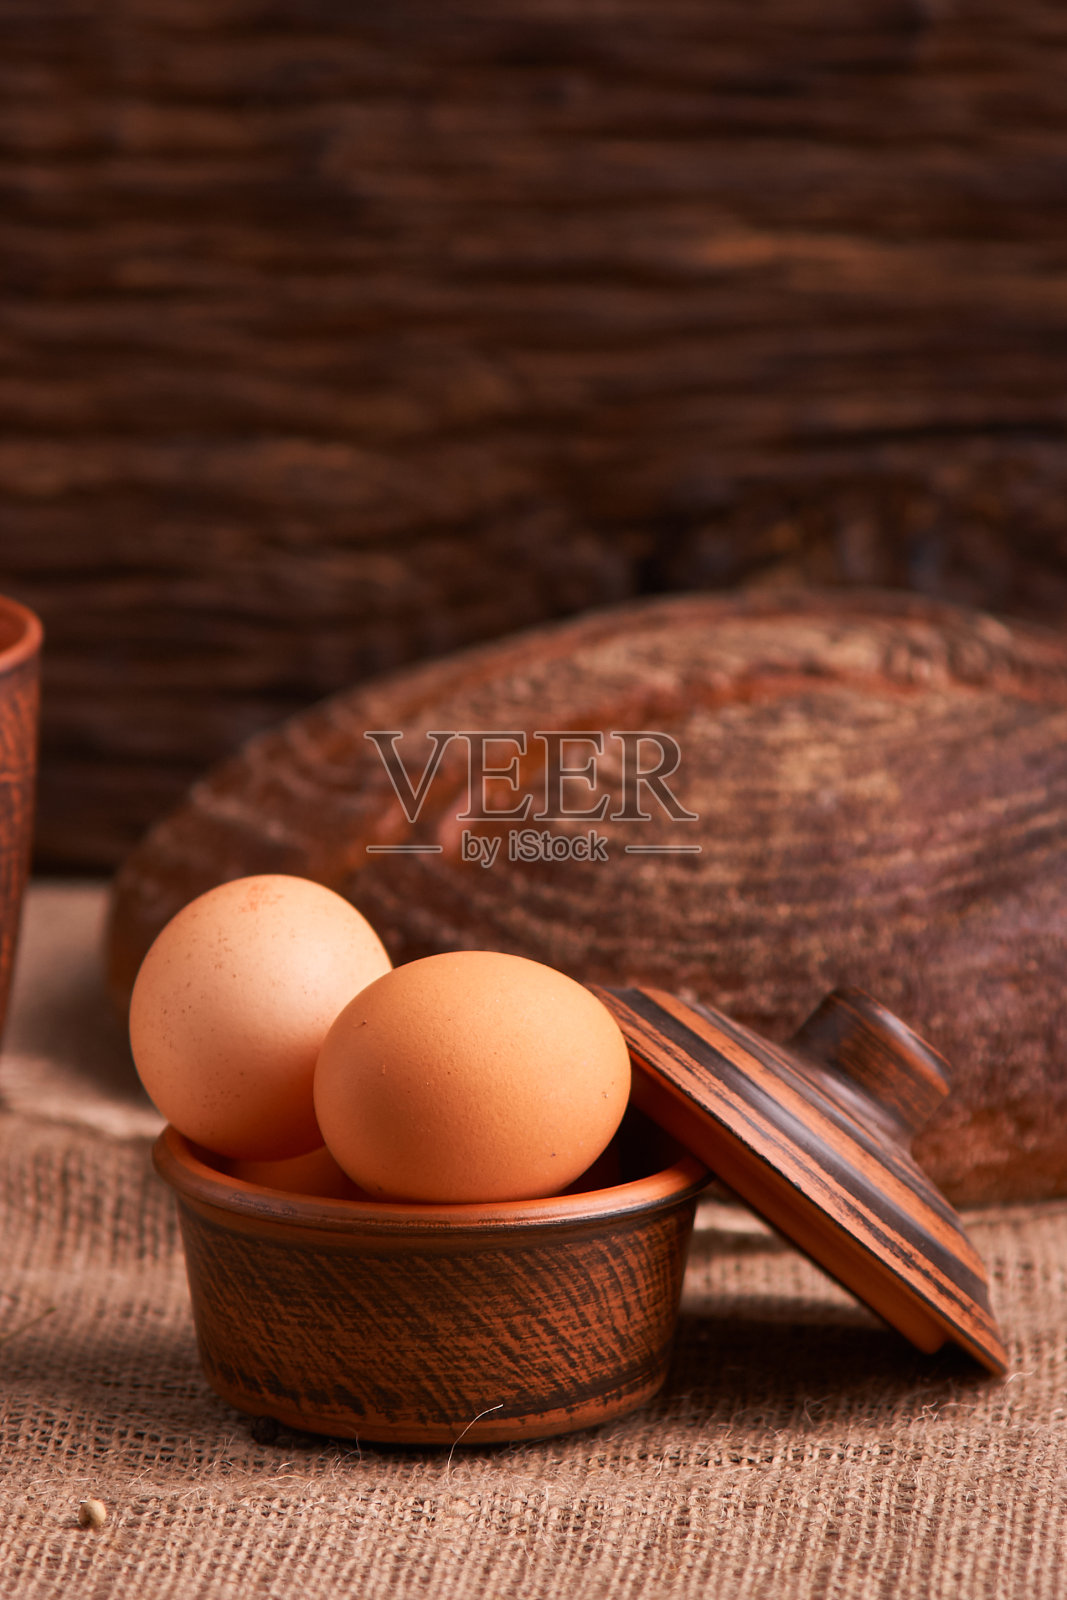 鸡蛋、面包和厨房用具，背景是古老的木头。美味的食物照片摄影图片